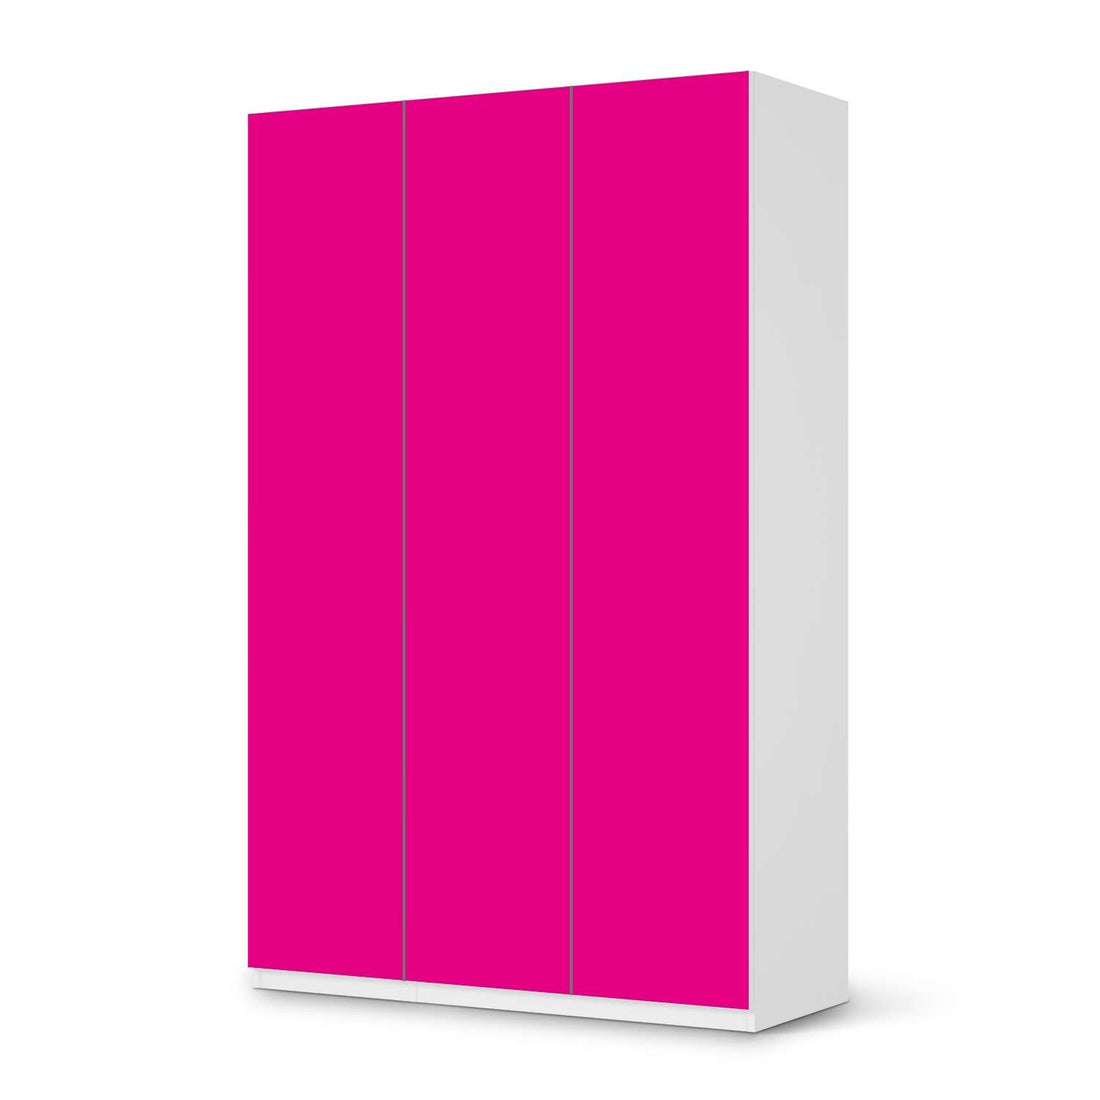 Selbstklebende Folie Pink Dark - IKEA Pax Schrank 236 cm Höhe - 3 Türen - weiss